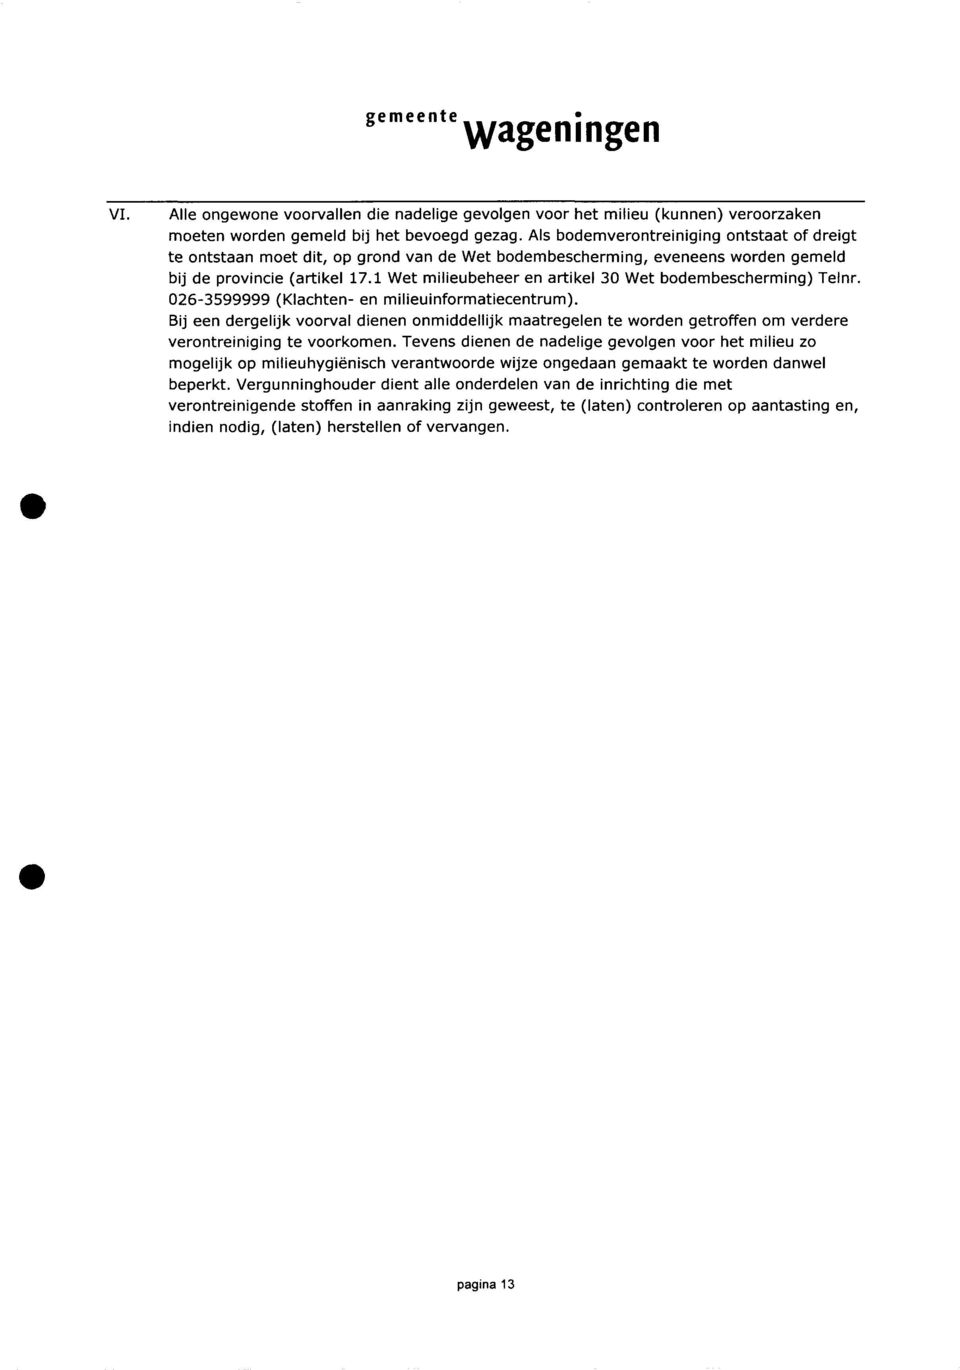 1 Wet milieubeheer en artikel 30 Wet bodembescherming) Telnr. 026-3599999 (Klachten- en milieuinformatiecentrum).